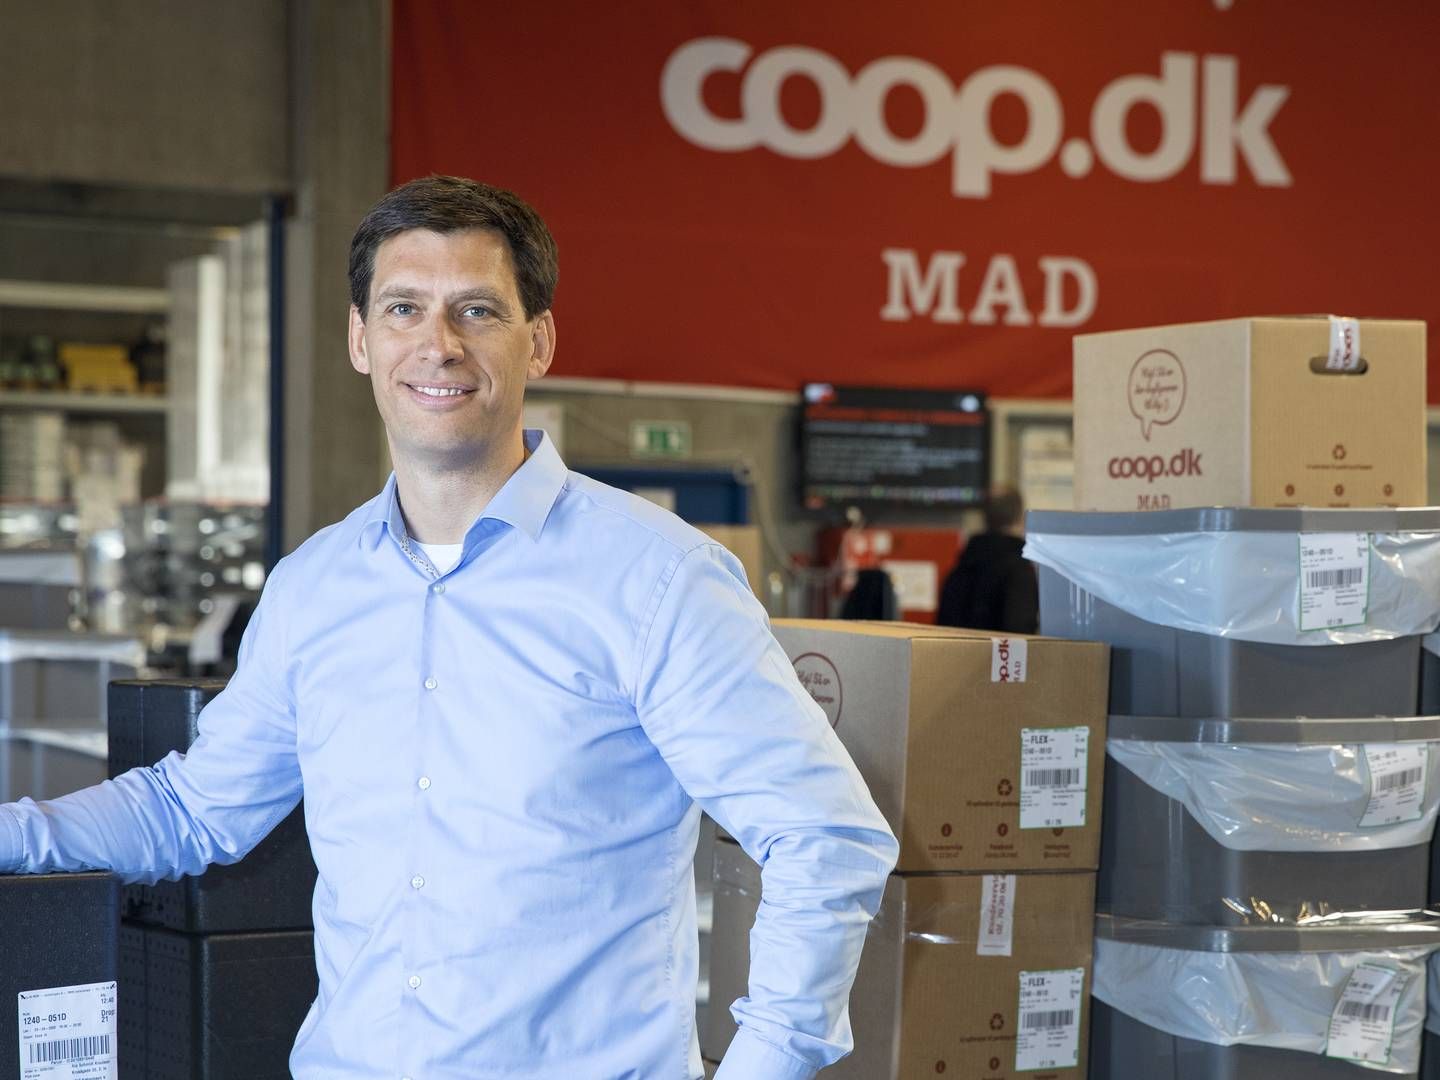 Lars Rasmussen er kommerciel direktør i Coops online supermarked, Coop.dk Mad | Foto: PR/Coop